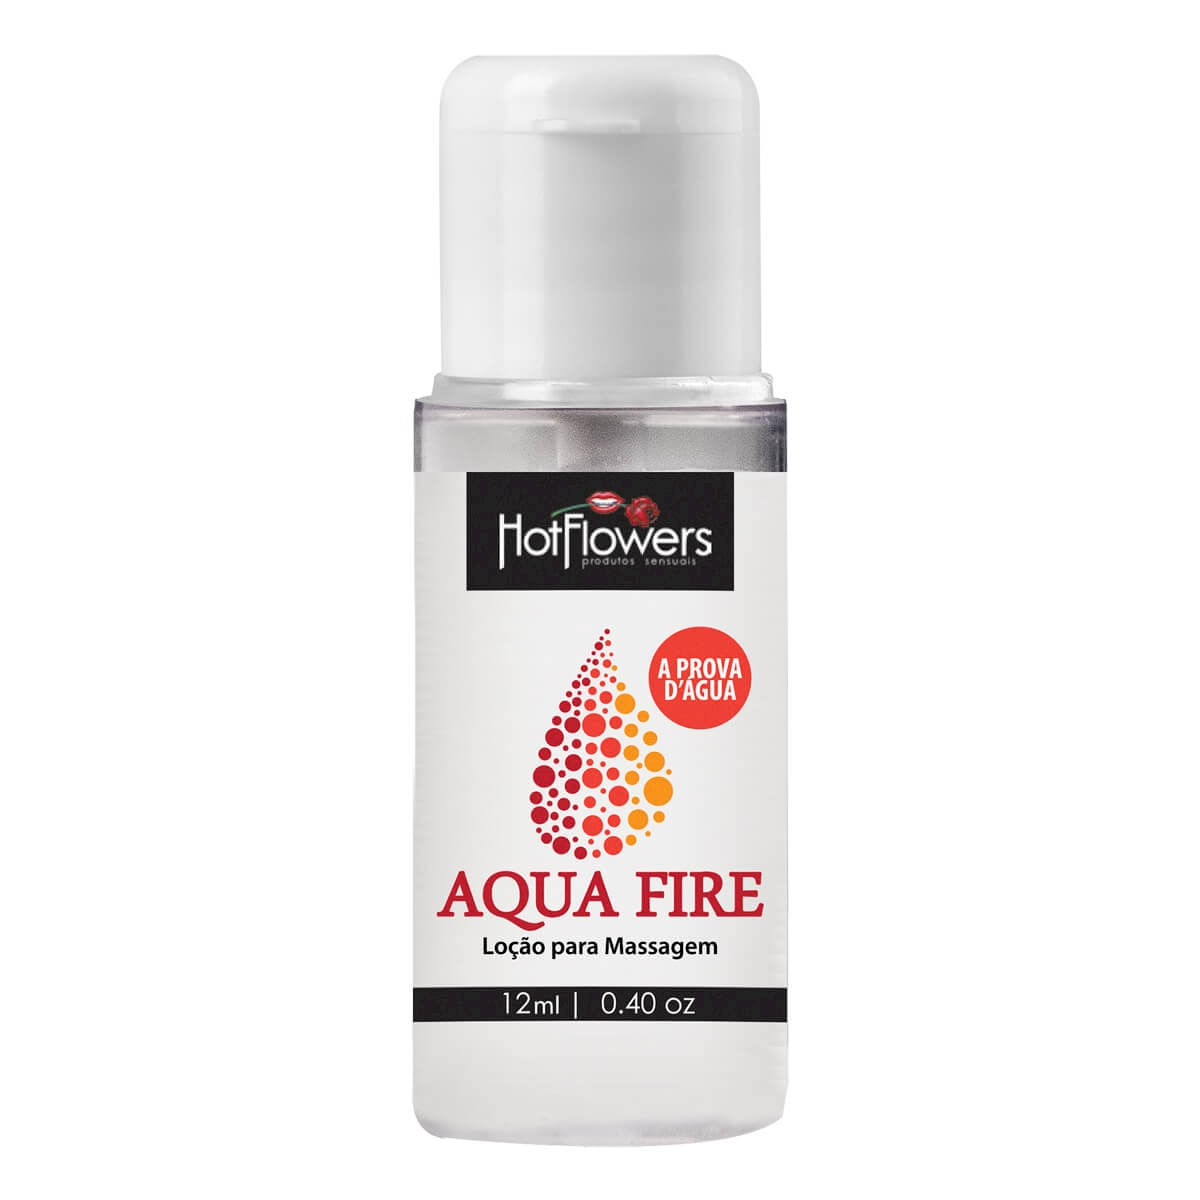 Aqua Fire Lubrificante Esquenta Resistente a Água 12ml Hot Flowers